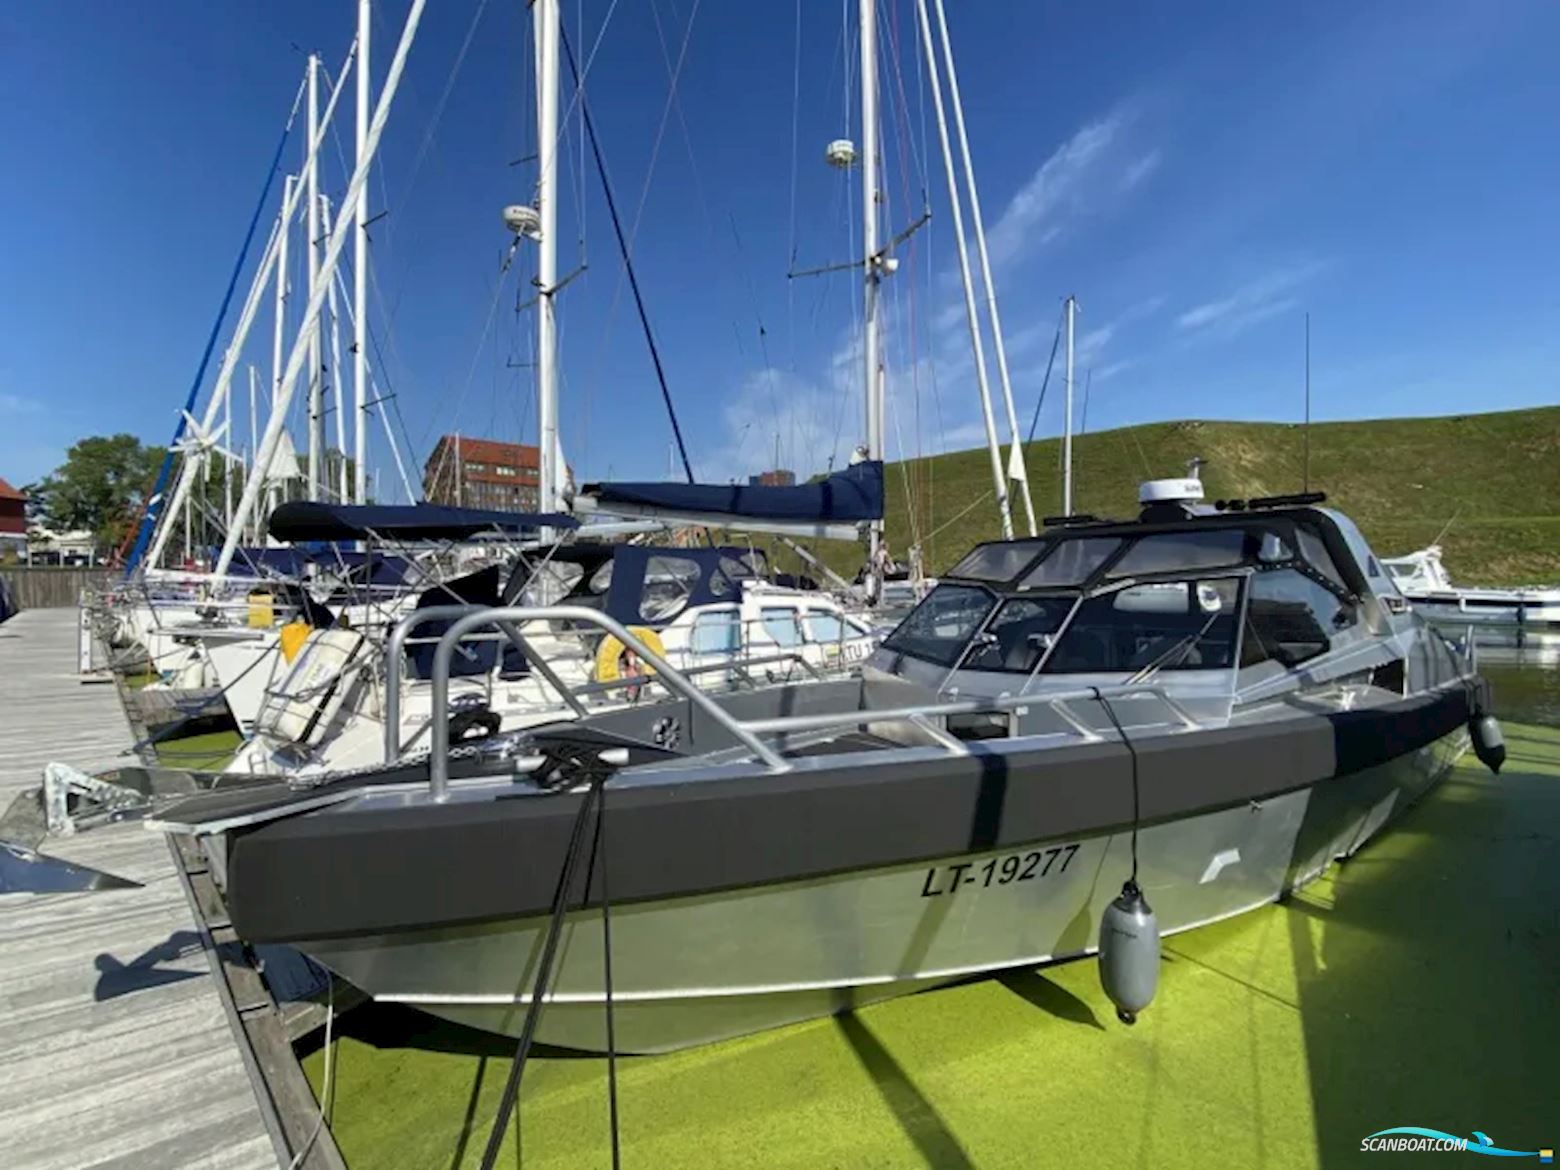 Anytec 1221Spd Motorbåt 2017, med Mercury motor, Sverige